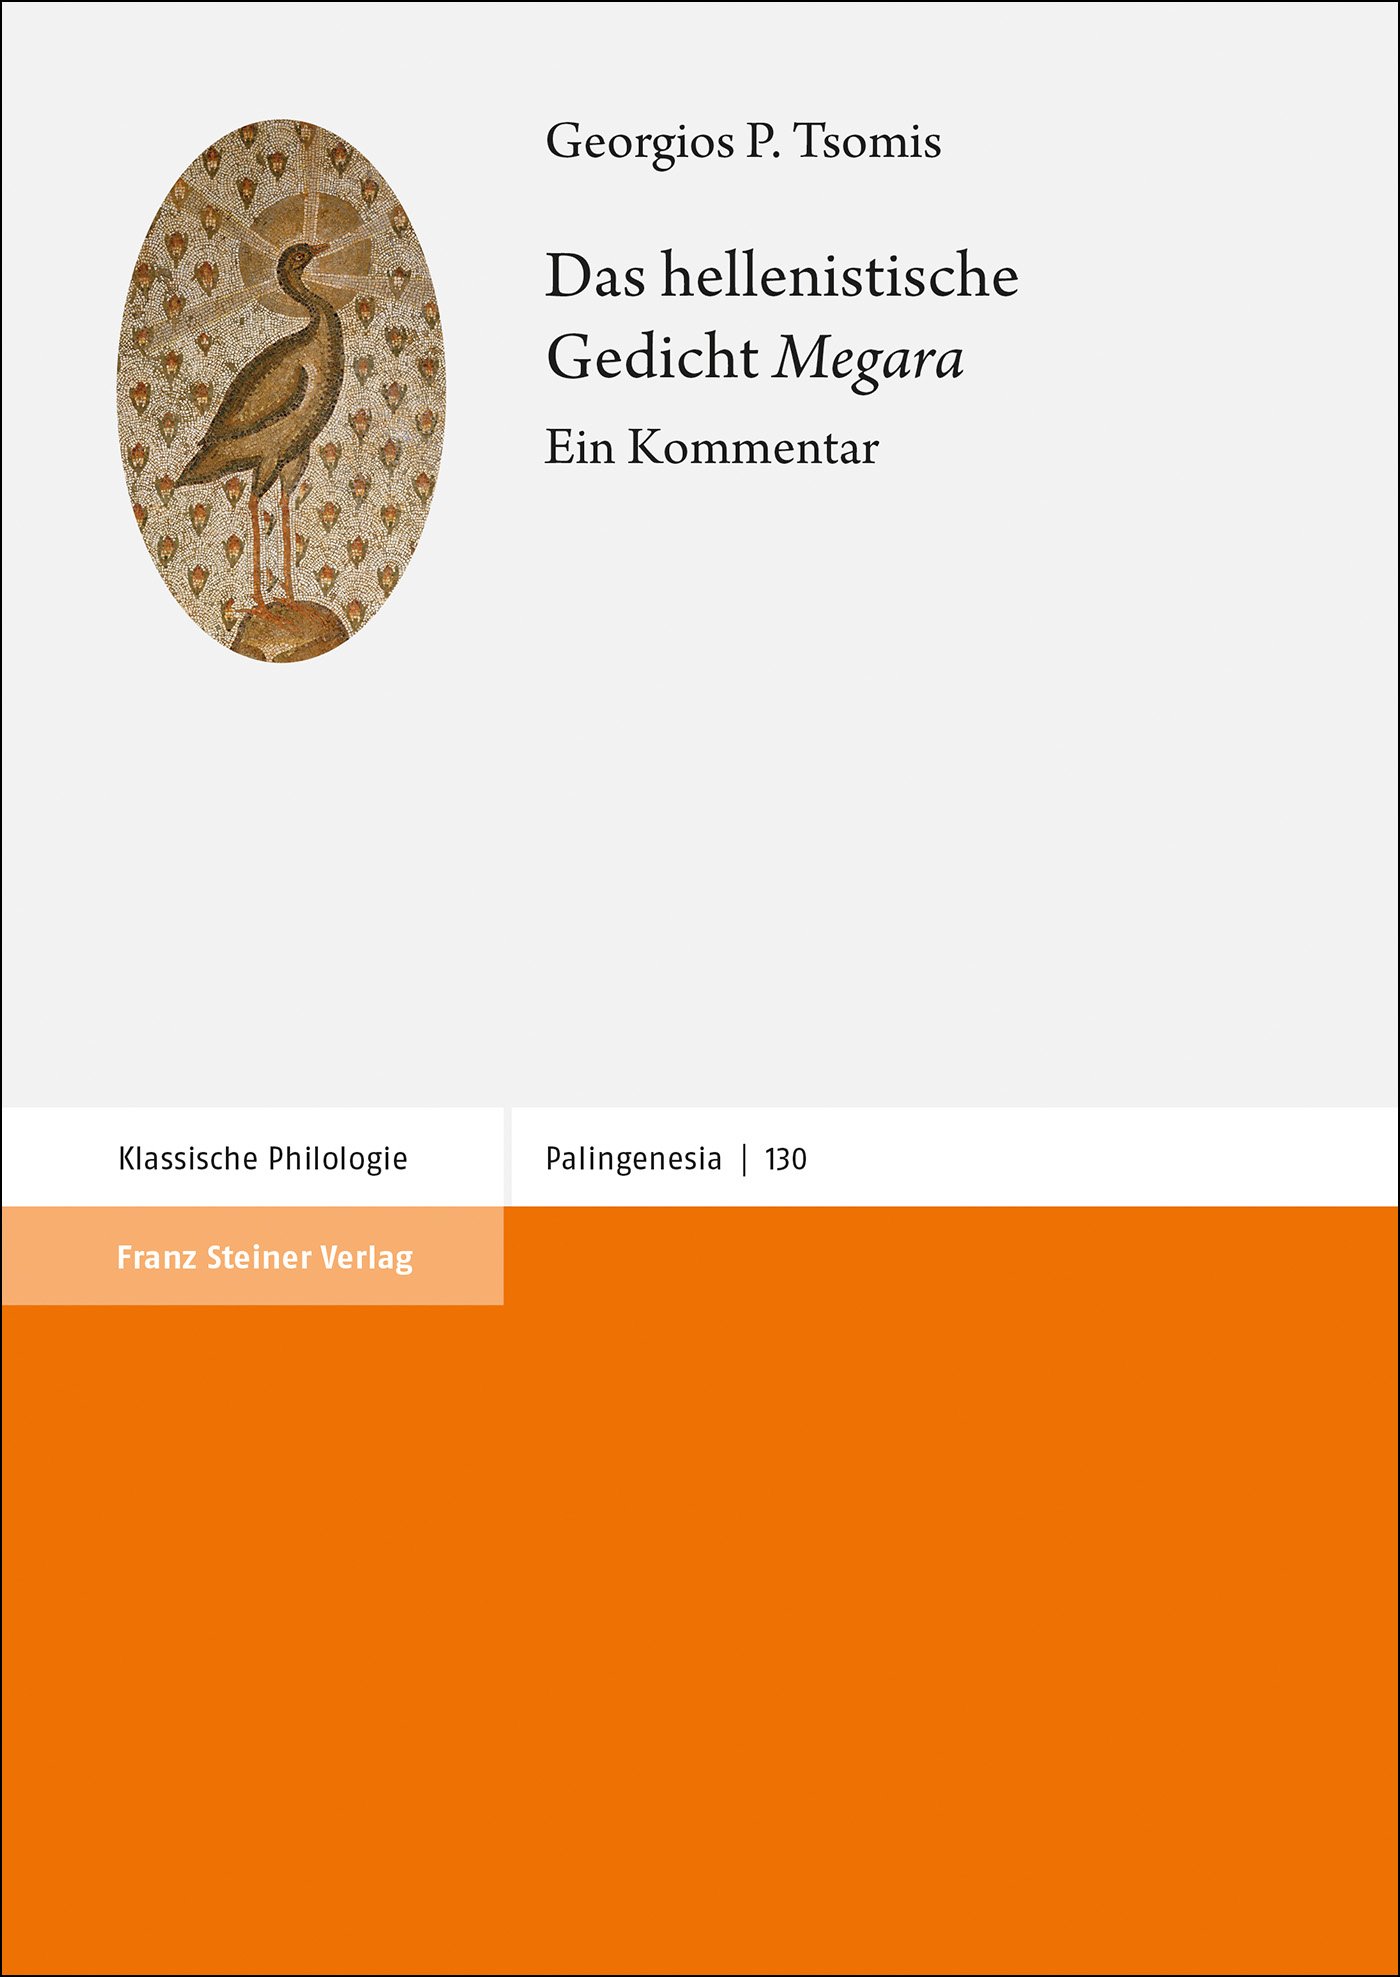 Das hellenistische Gedicht "Megara"